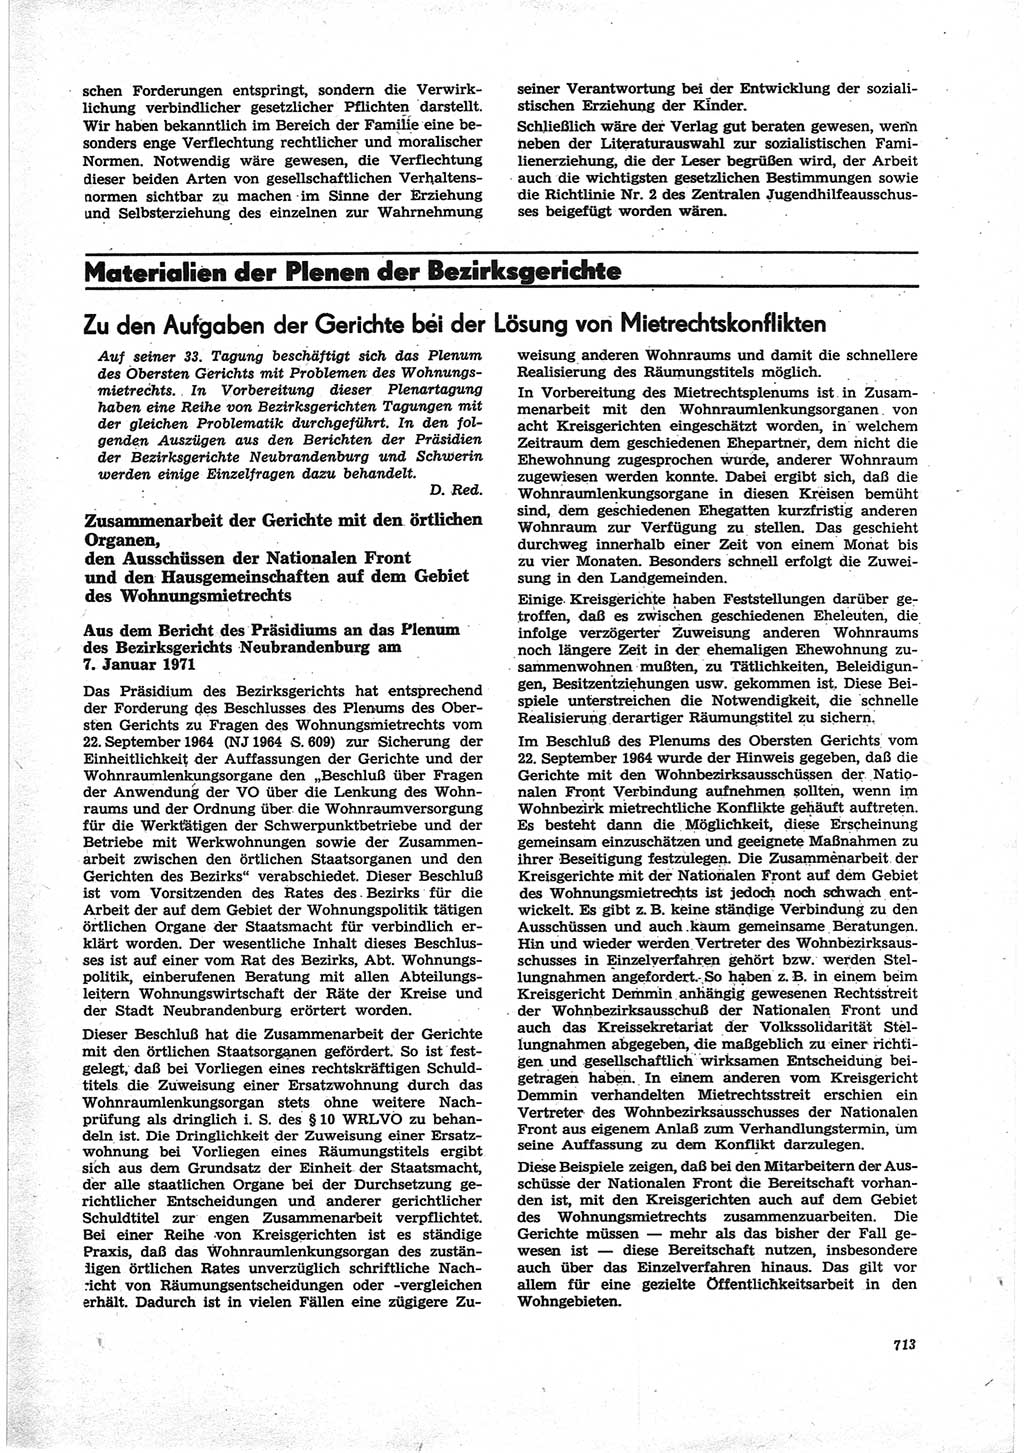 Neue Justiz (NJ), Zeitschrift für Recht und Rechtswissenschaft [Deutsche Demokratische Republik (DDR)], 25. Jahrgang 1971, Seite 713 (NJ DDR 1971, S. 713)